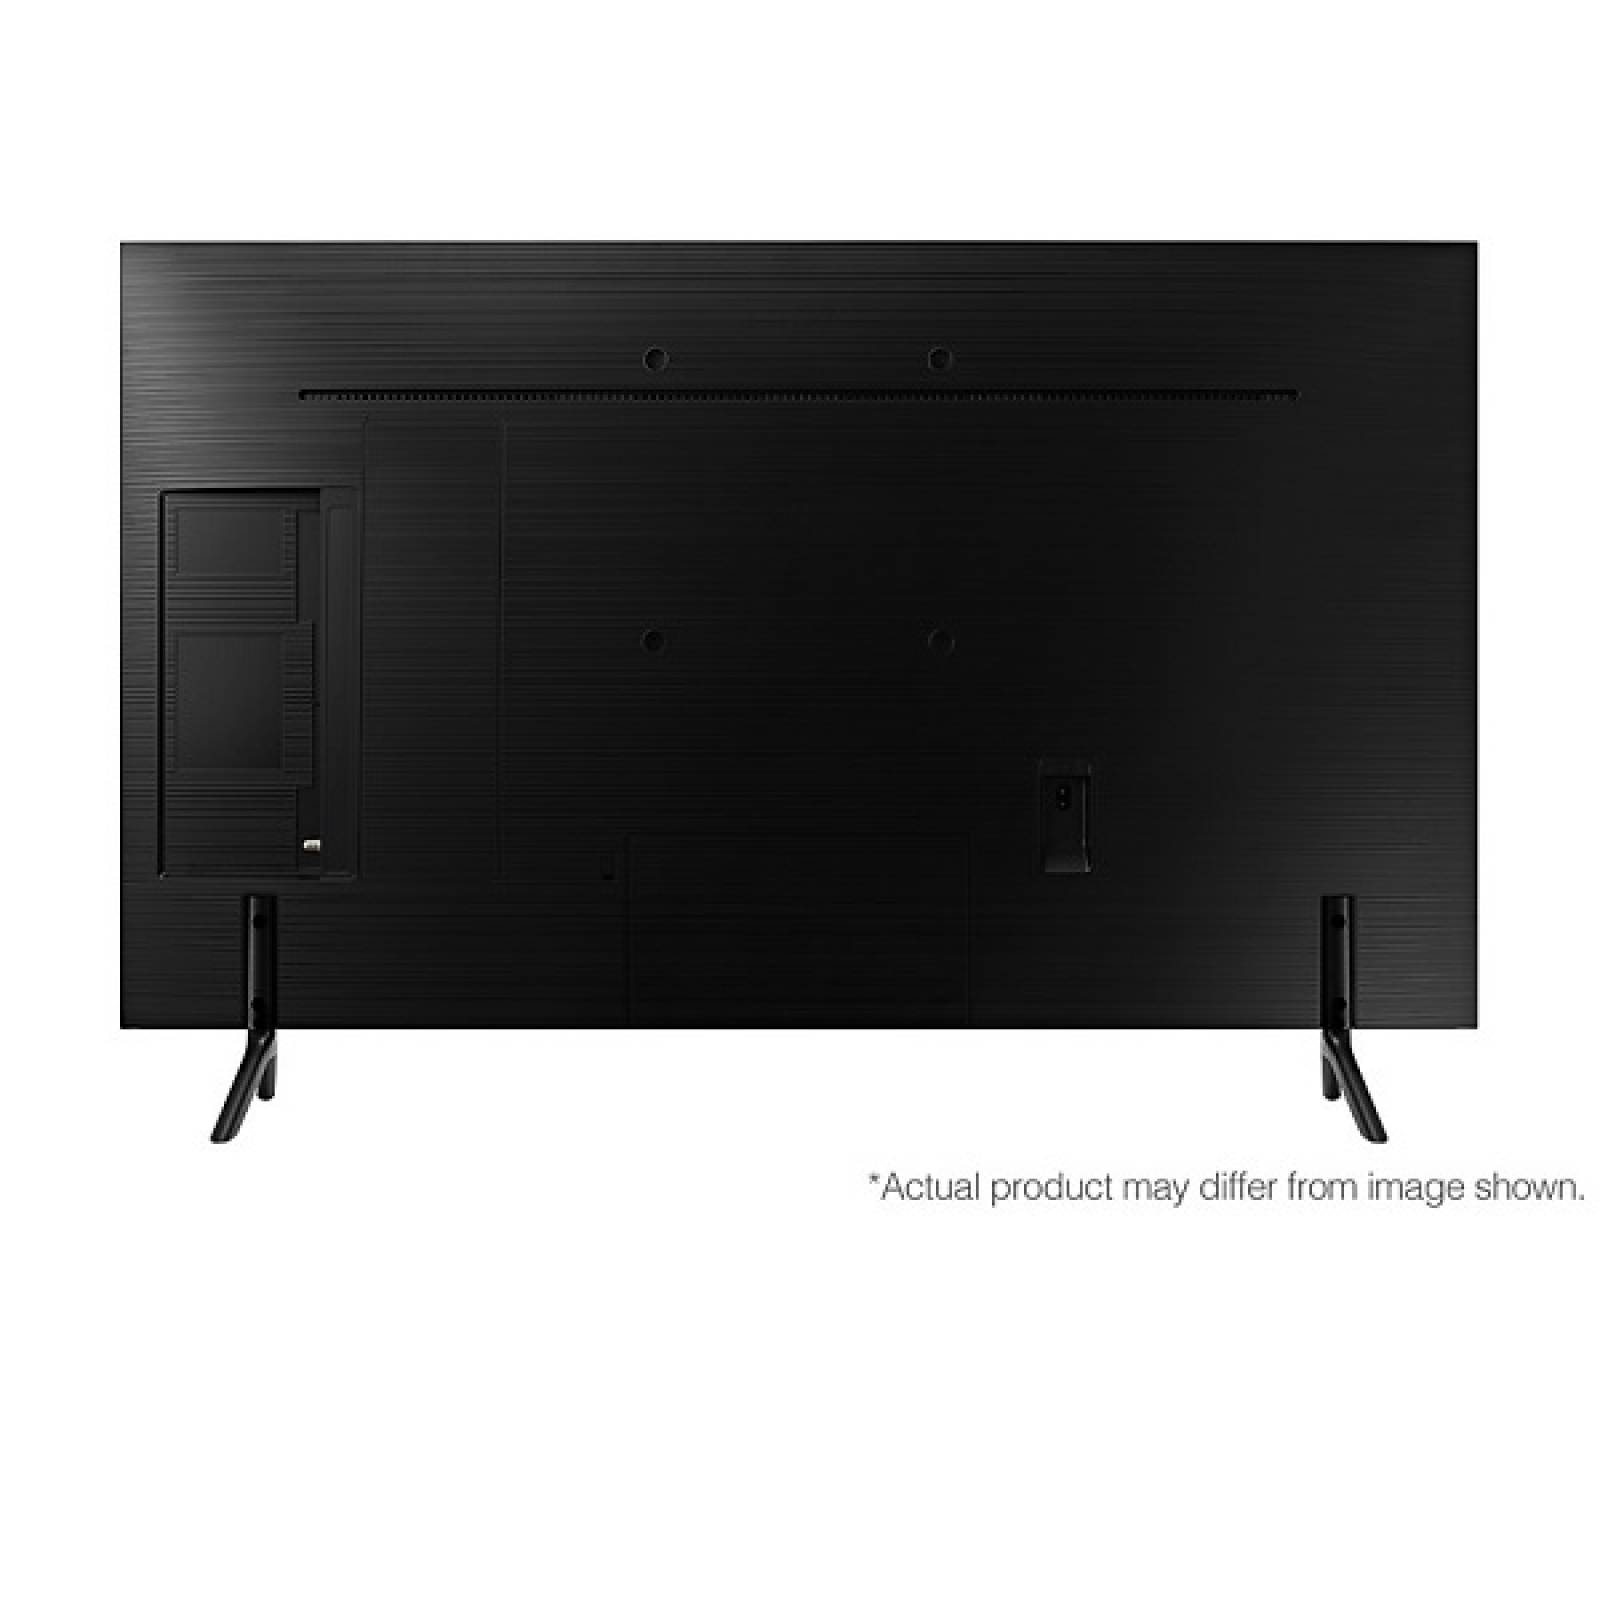 Smart TV Samsung 43 LED 4K HDR PurColor UN43RU7100